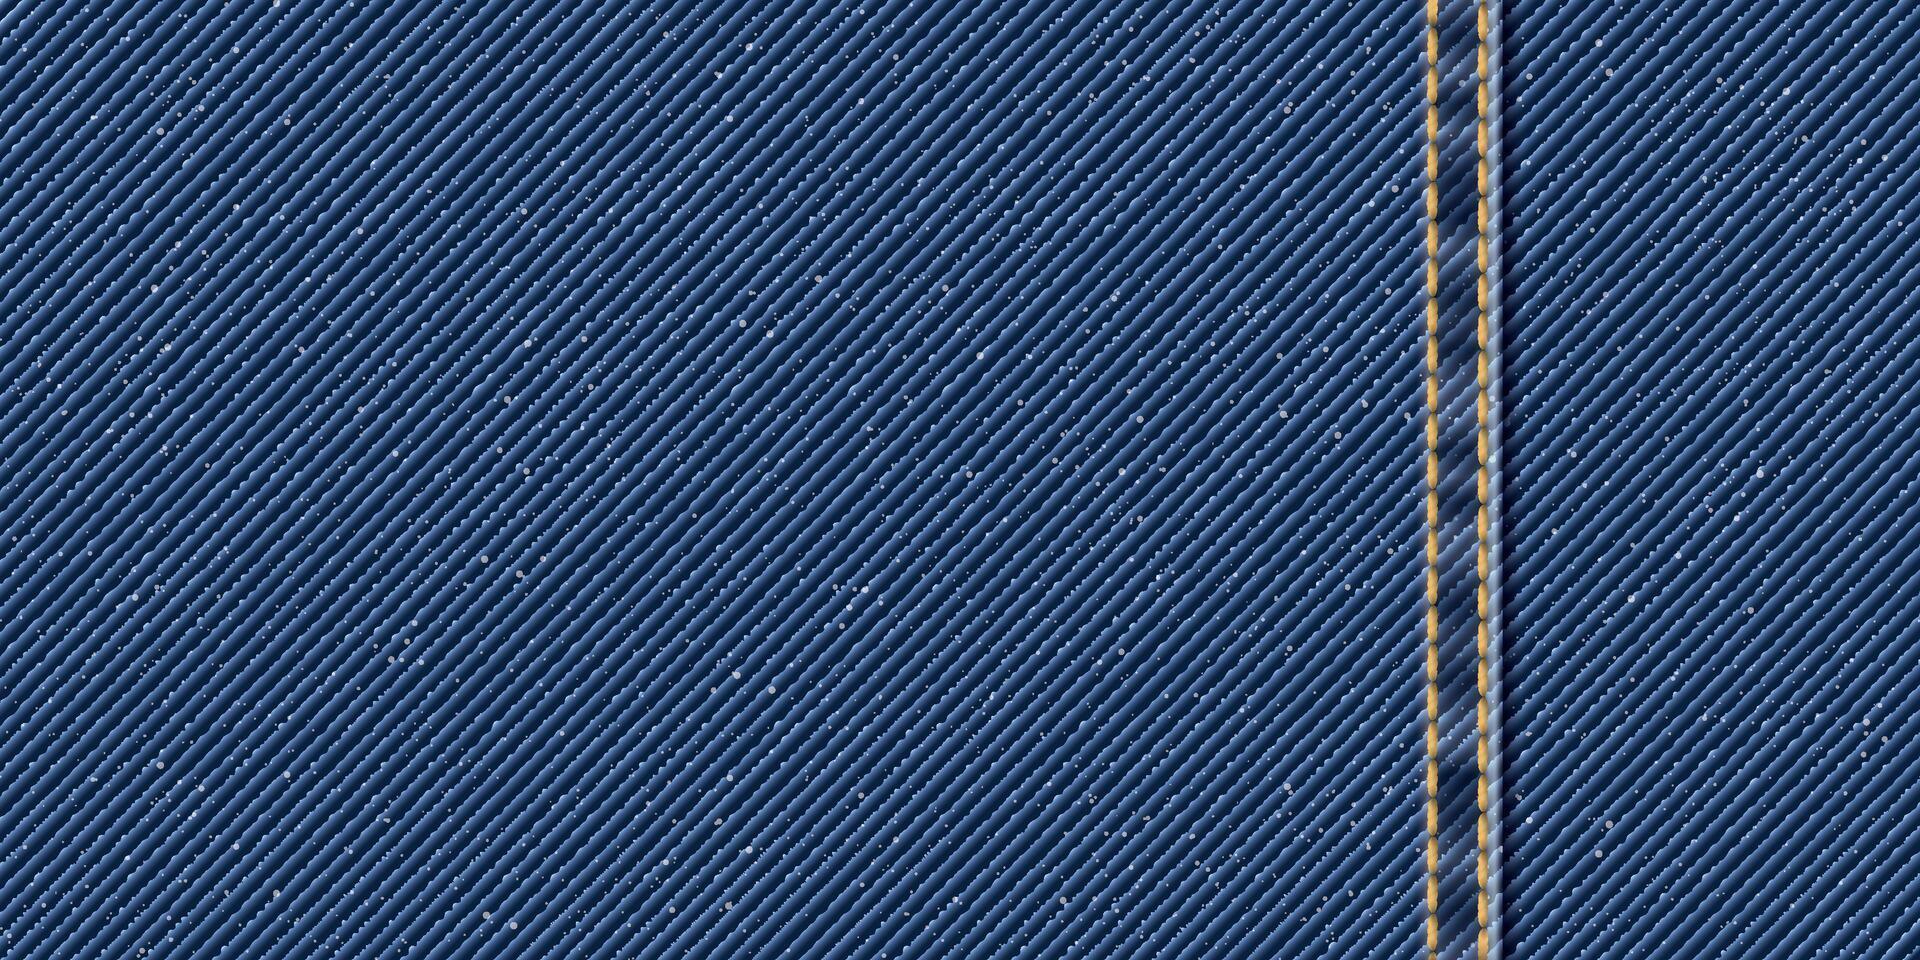 denim blå jean textil- mönster bakgrund med guld sömmar och veck illustration. vektor